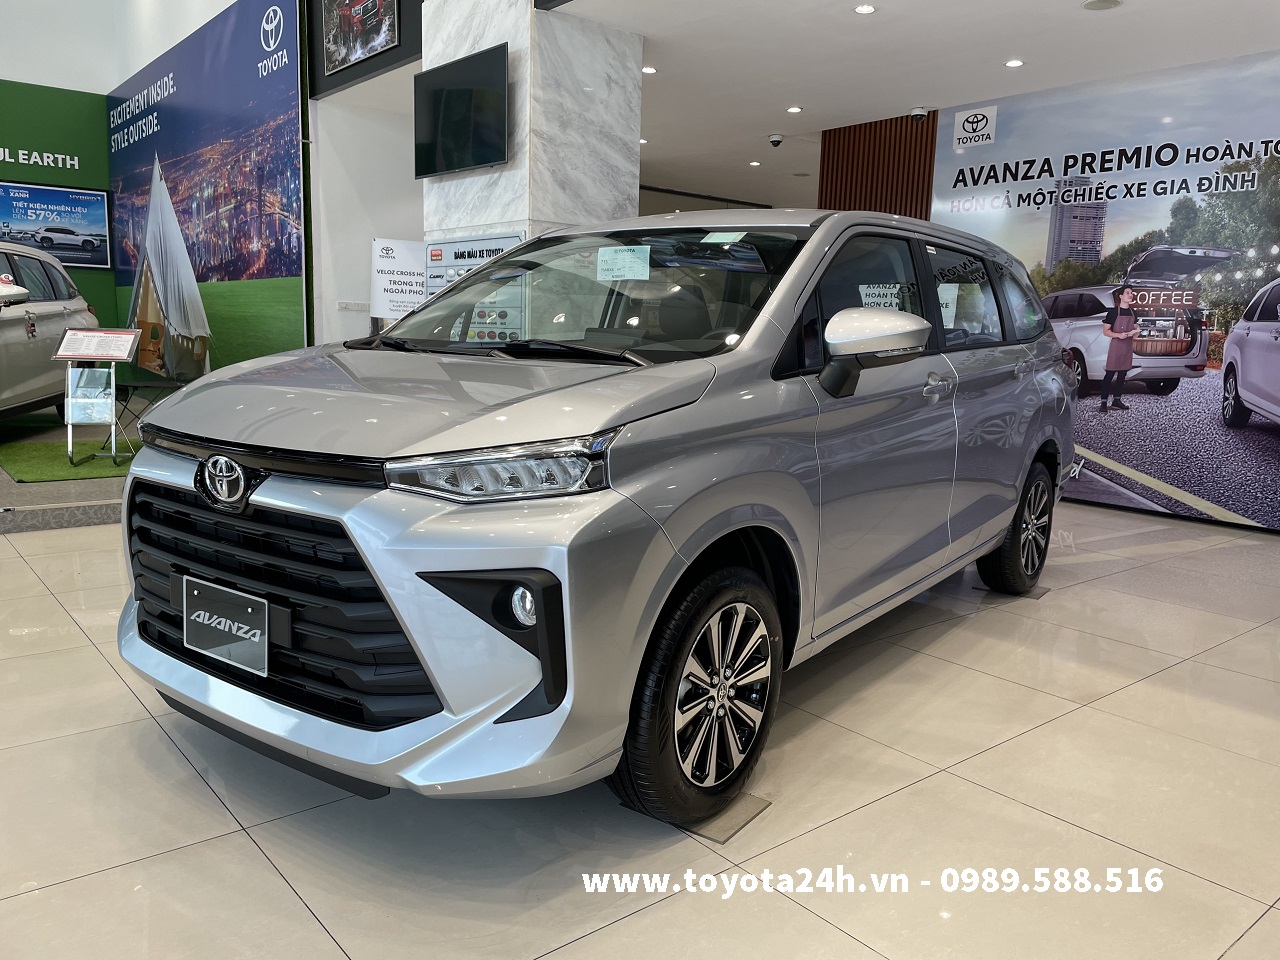 Toyota Avanza Premio 1.5CVT Màu Ghi Bạc 2022 Hình Ảnh Bảng Giá Xe ...